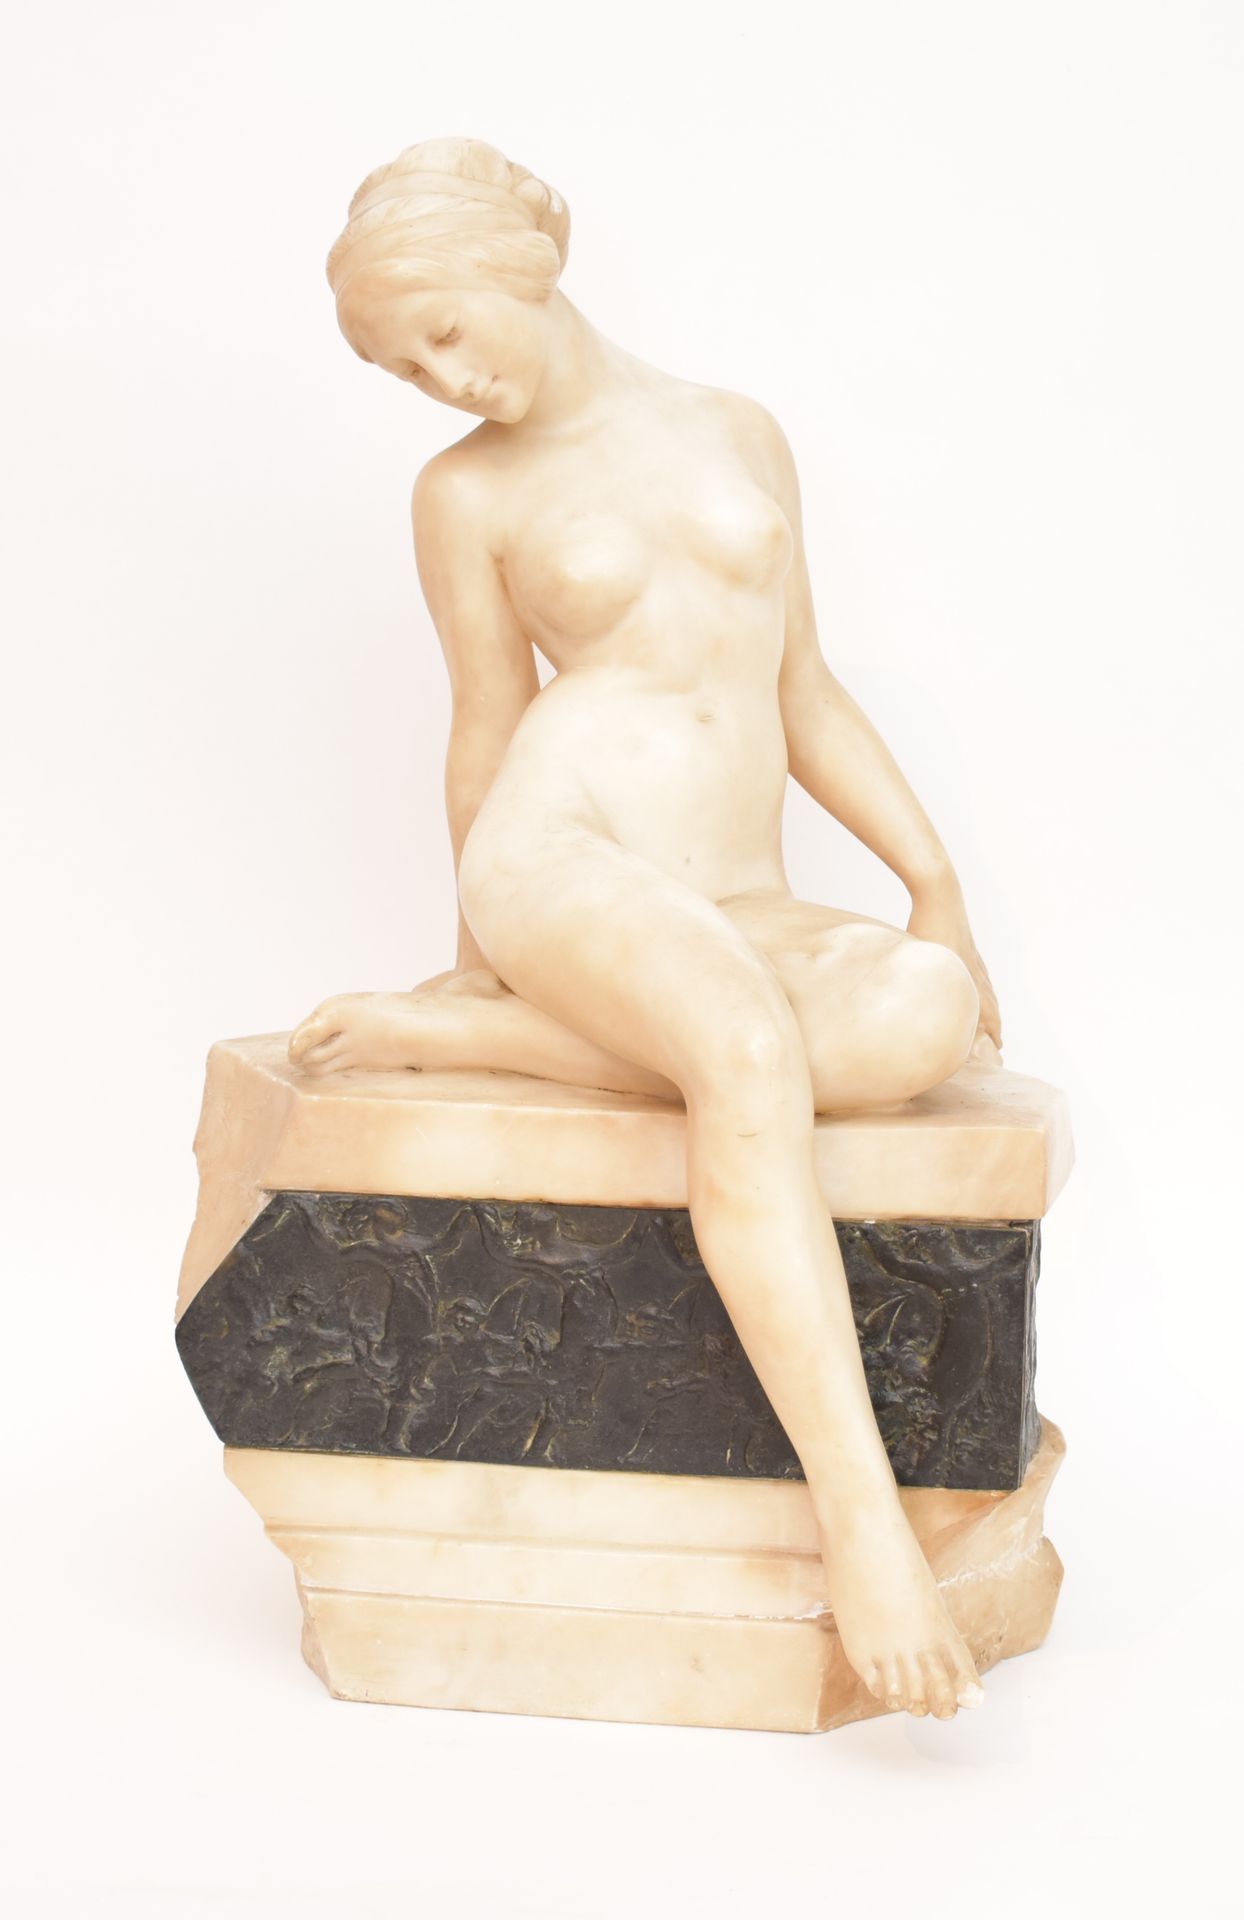 Null 安东尼奥-弗里利 (1860-1902)

坐在岩石上的裸体女人

描绘古代舞者的石膏雕塑和青铜浮雕

签名并注明："A FRILLI FIRENZE&hellip;